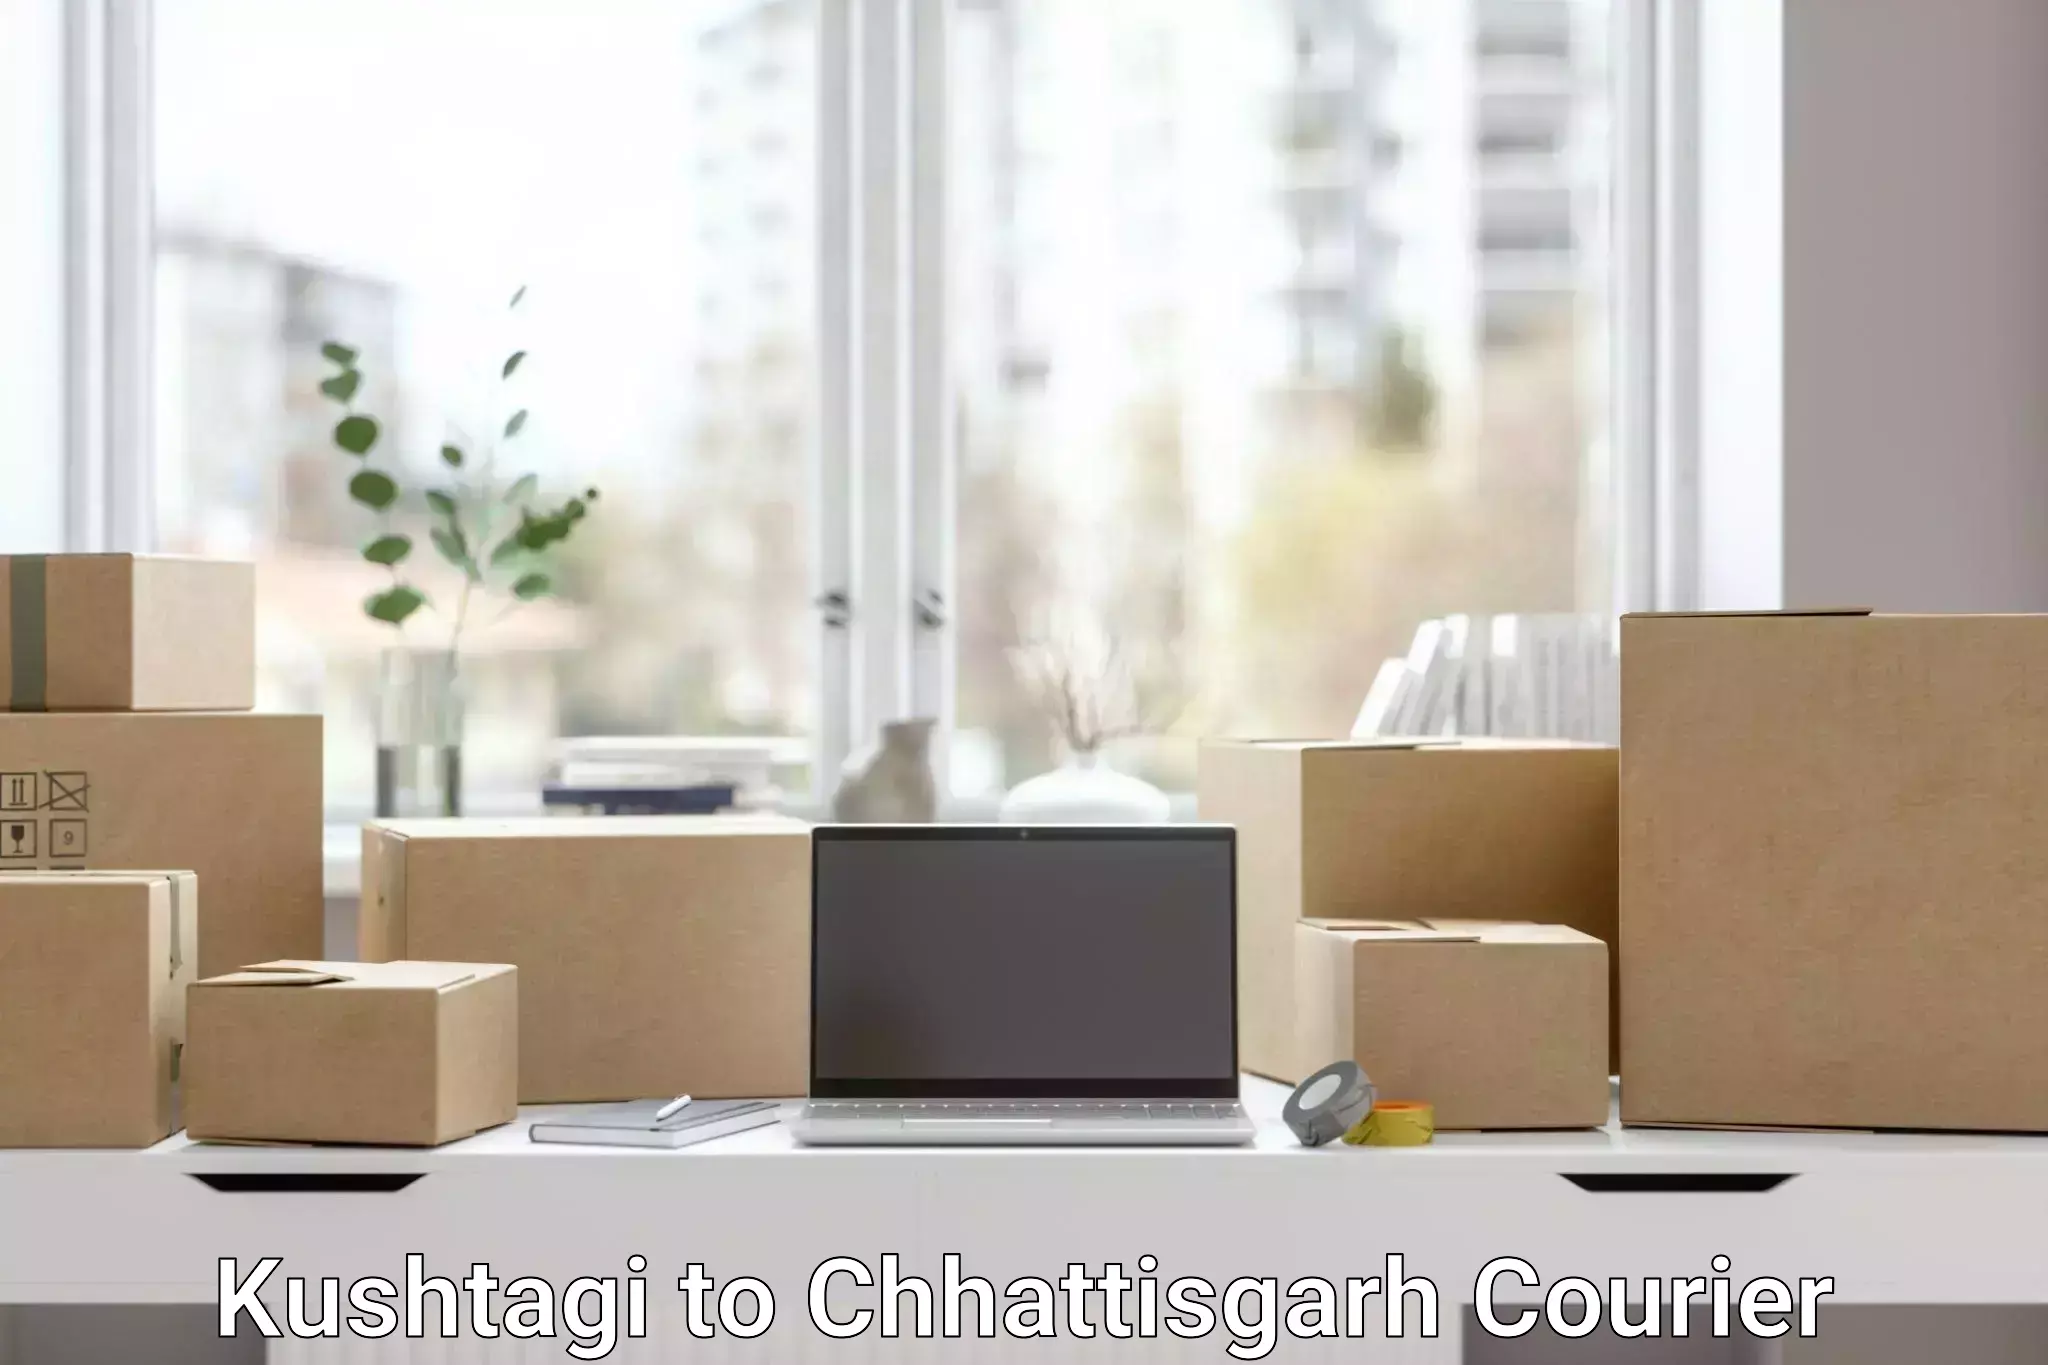 Quality courier services Kushtagi to Chhattisgarh